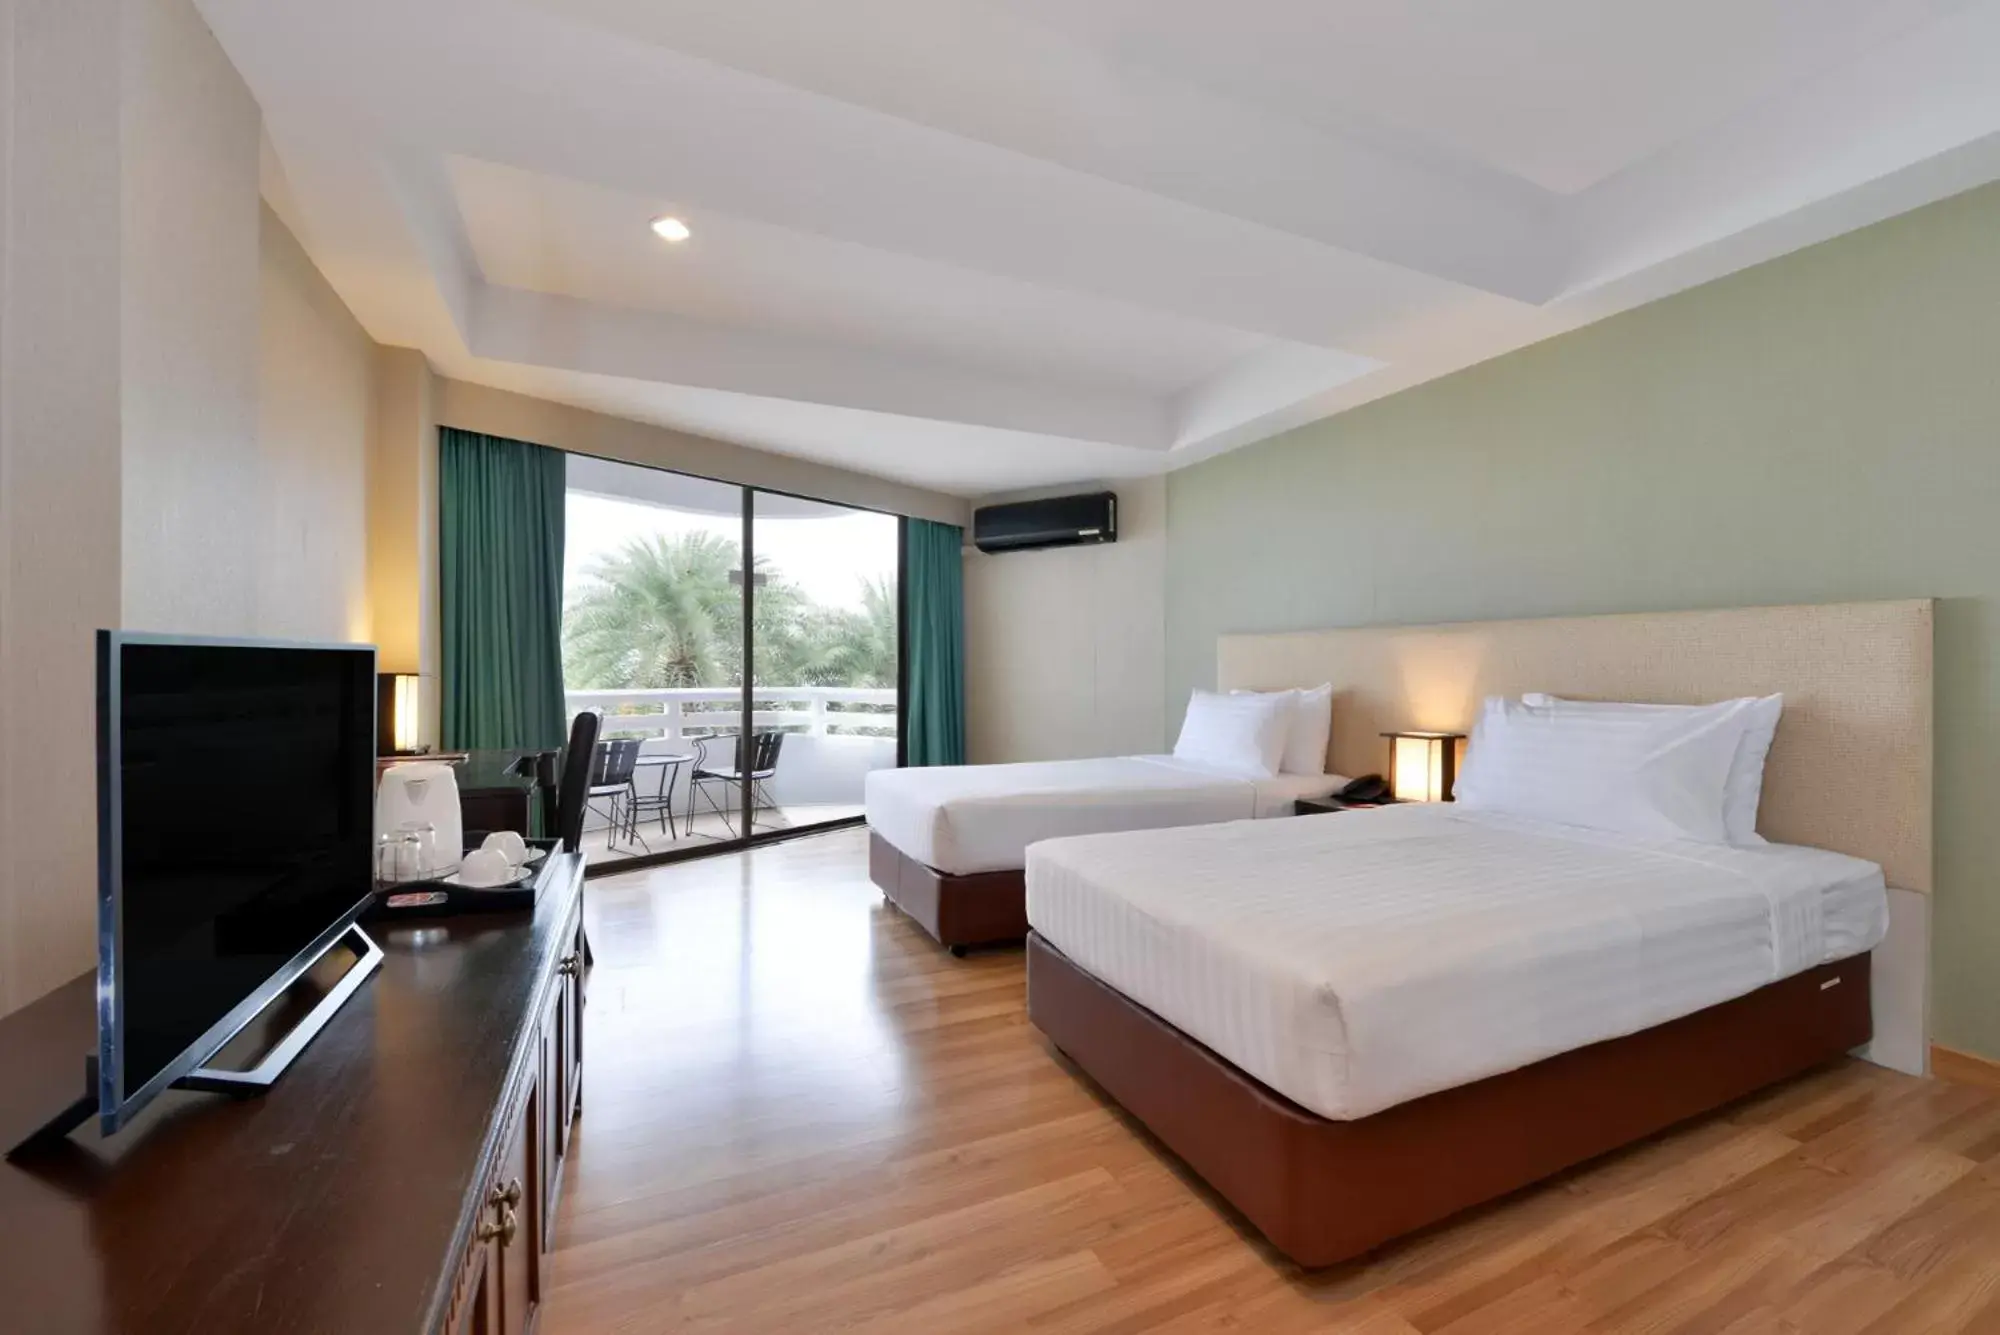 Bedroom, TV/Entertainment Center in D Varee Jomtien Beach, Pattaya